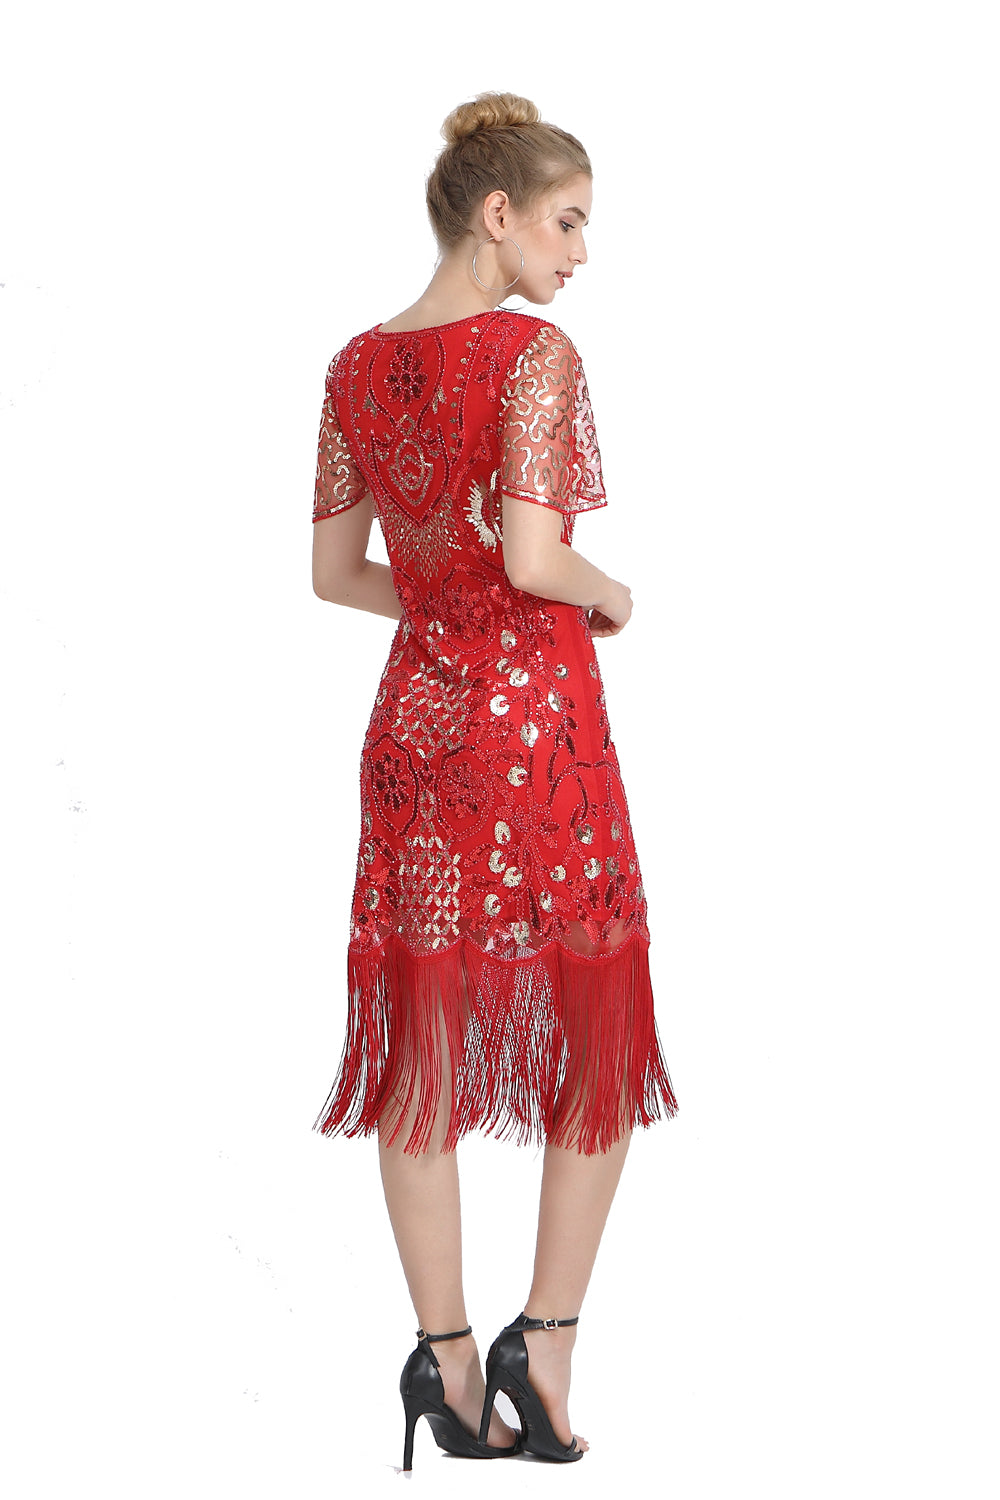 Sequin Fringe Skirt Dress 1920s Retro Fringe Skirt Party Banquet Dress Festival Evening Dress